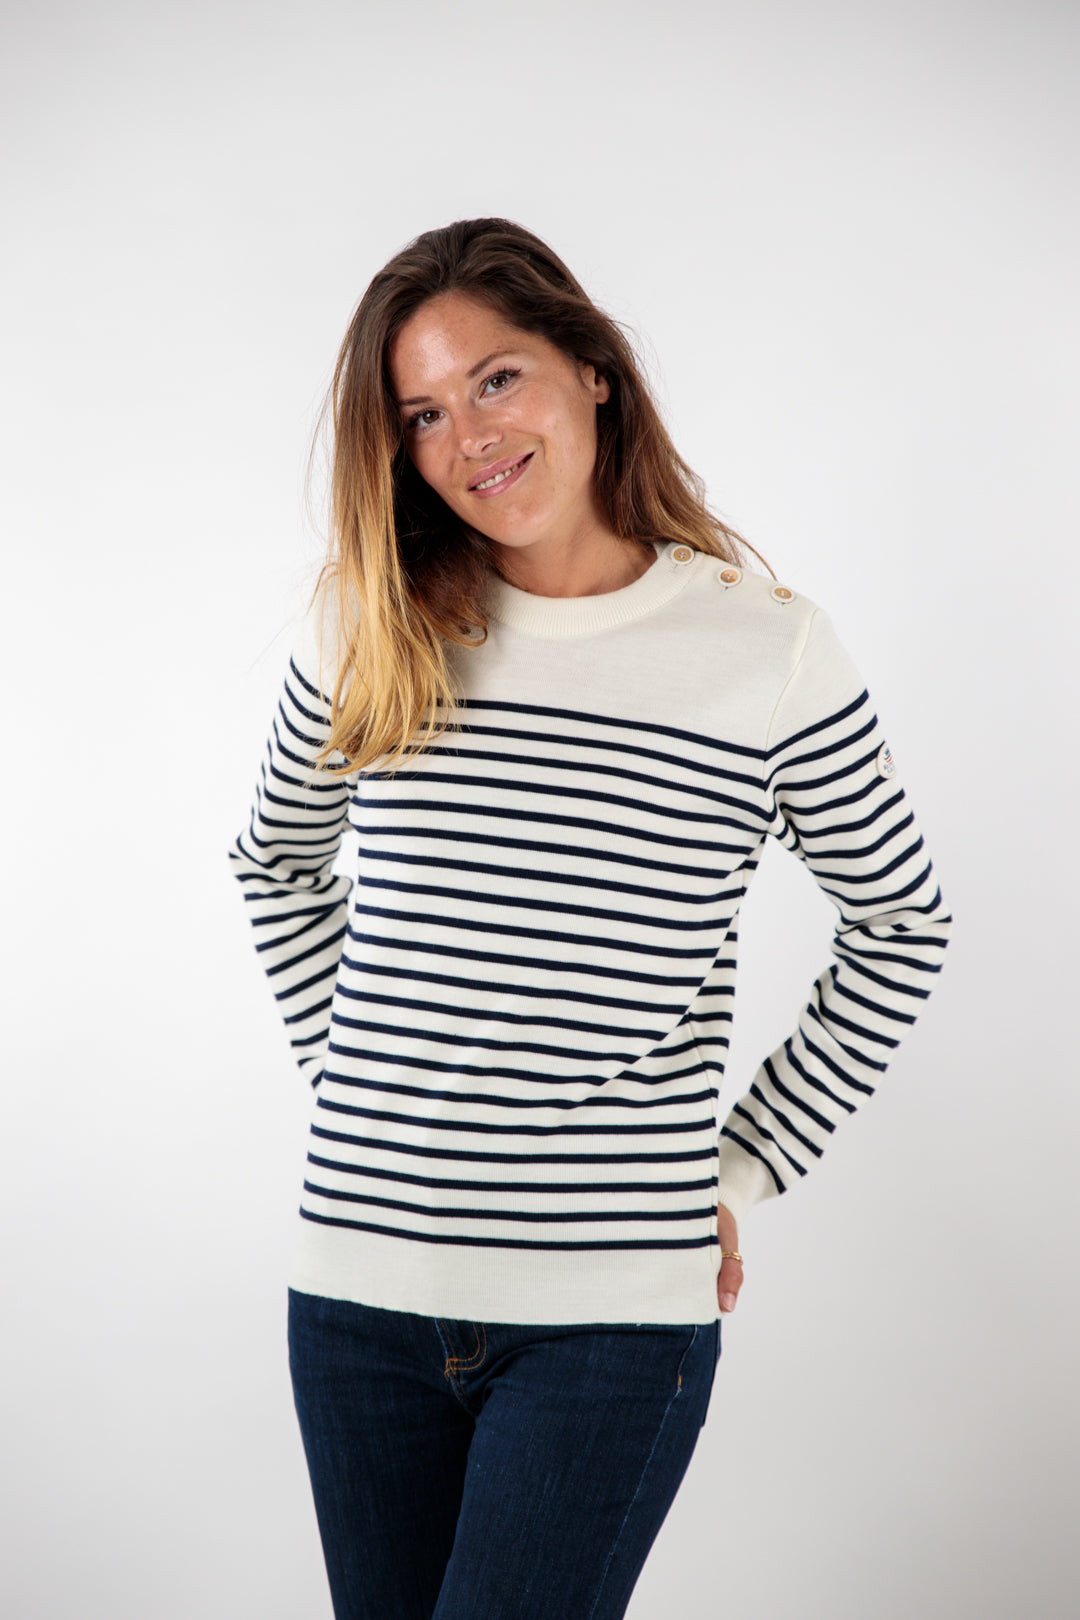 Striped sailor sweater with round neckline